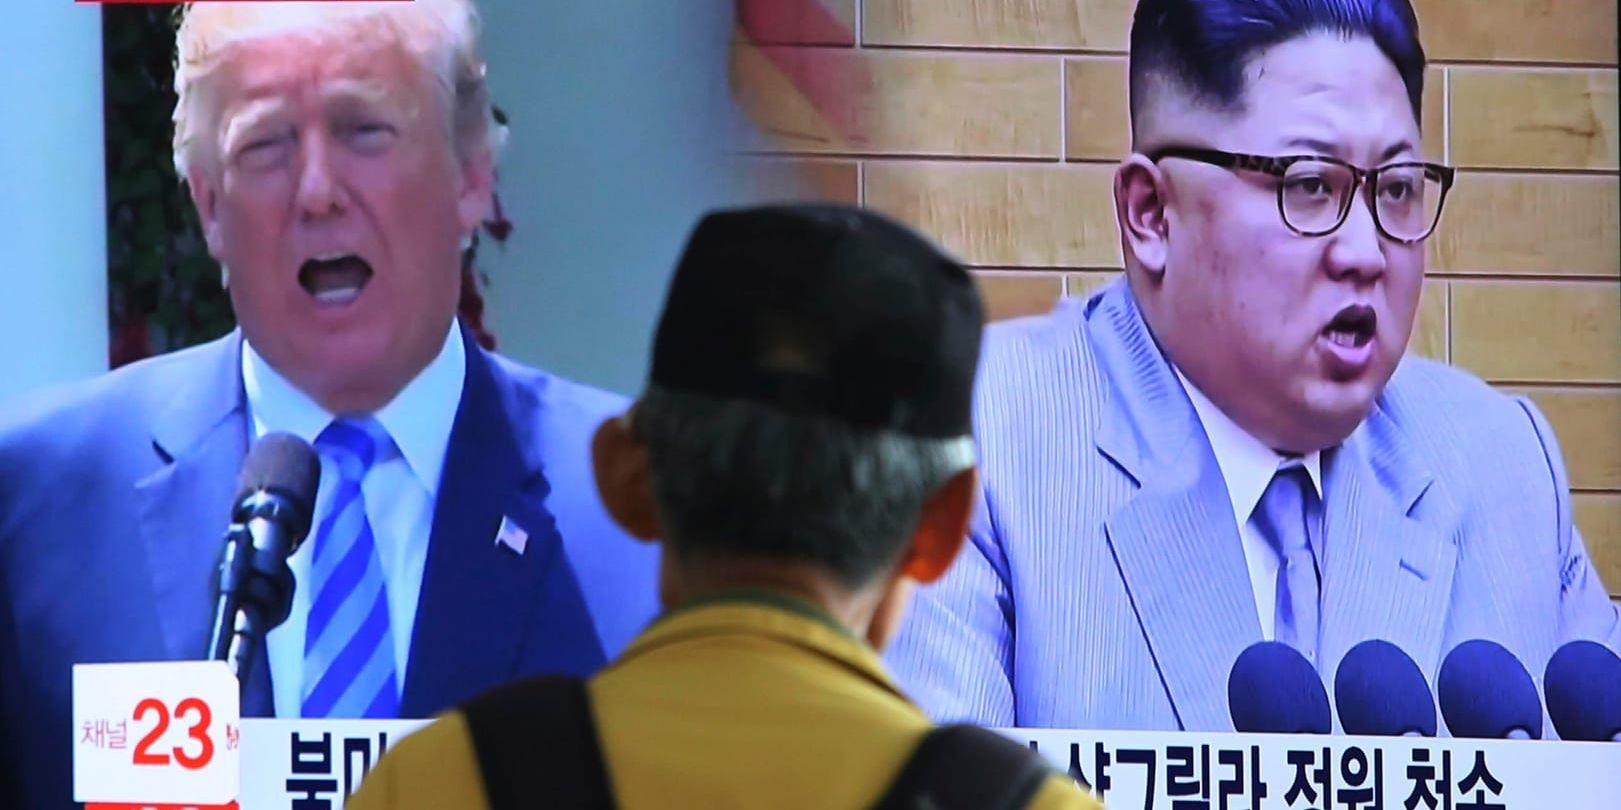 USA:s president Donald Trump och Nordkoreas ledare Kim Jong-Un på en tv-skärm på en station i Sydkorea.